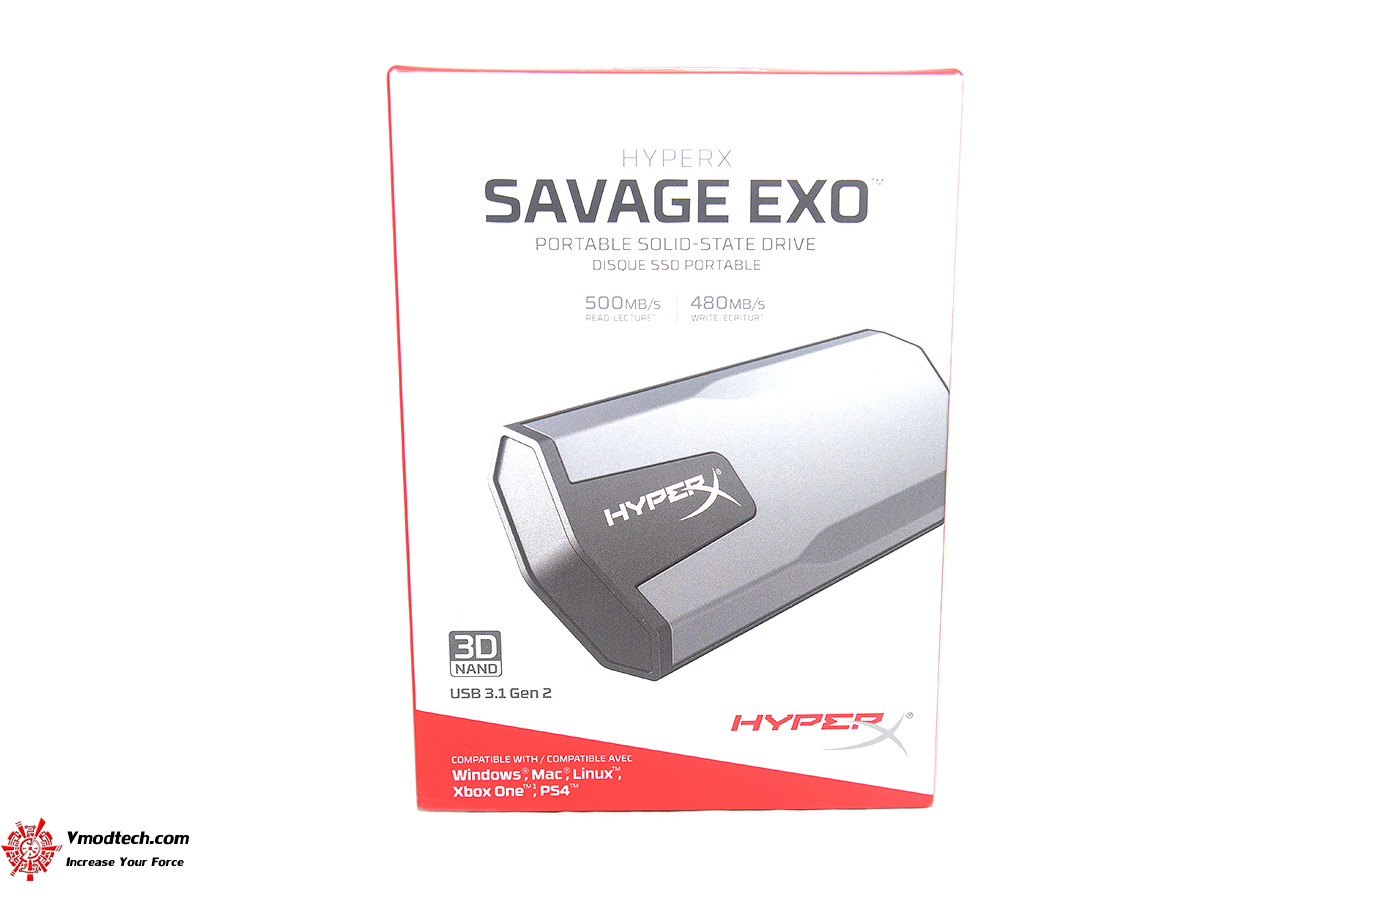 dsc 4462 HyperX SAVAGE EXO Portable SSD 480GB Review